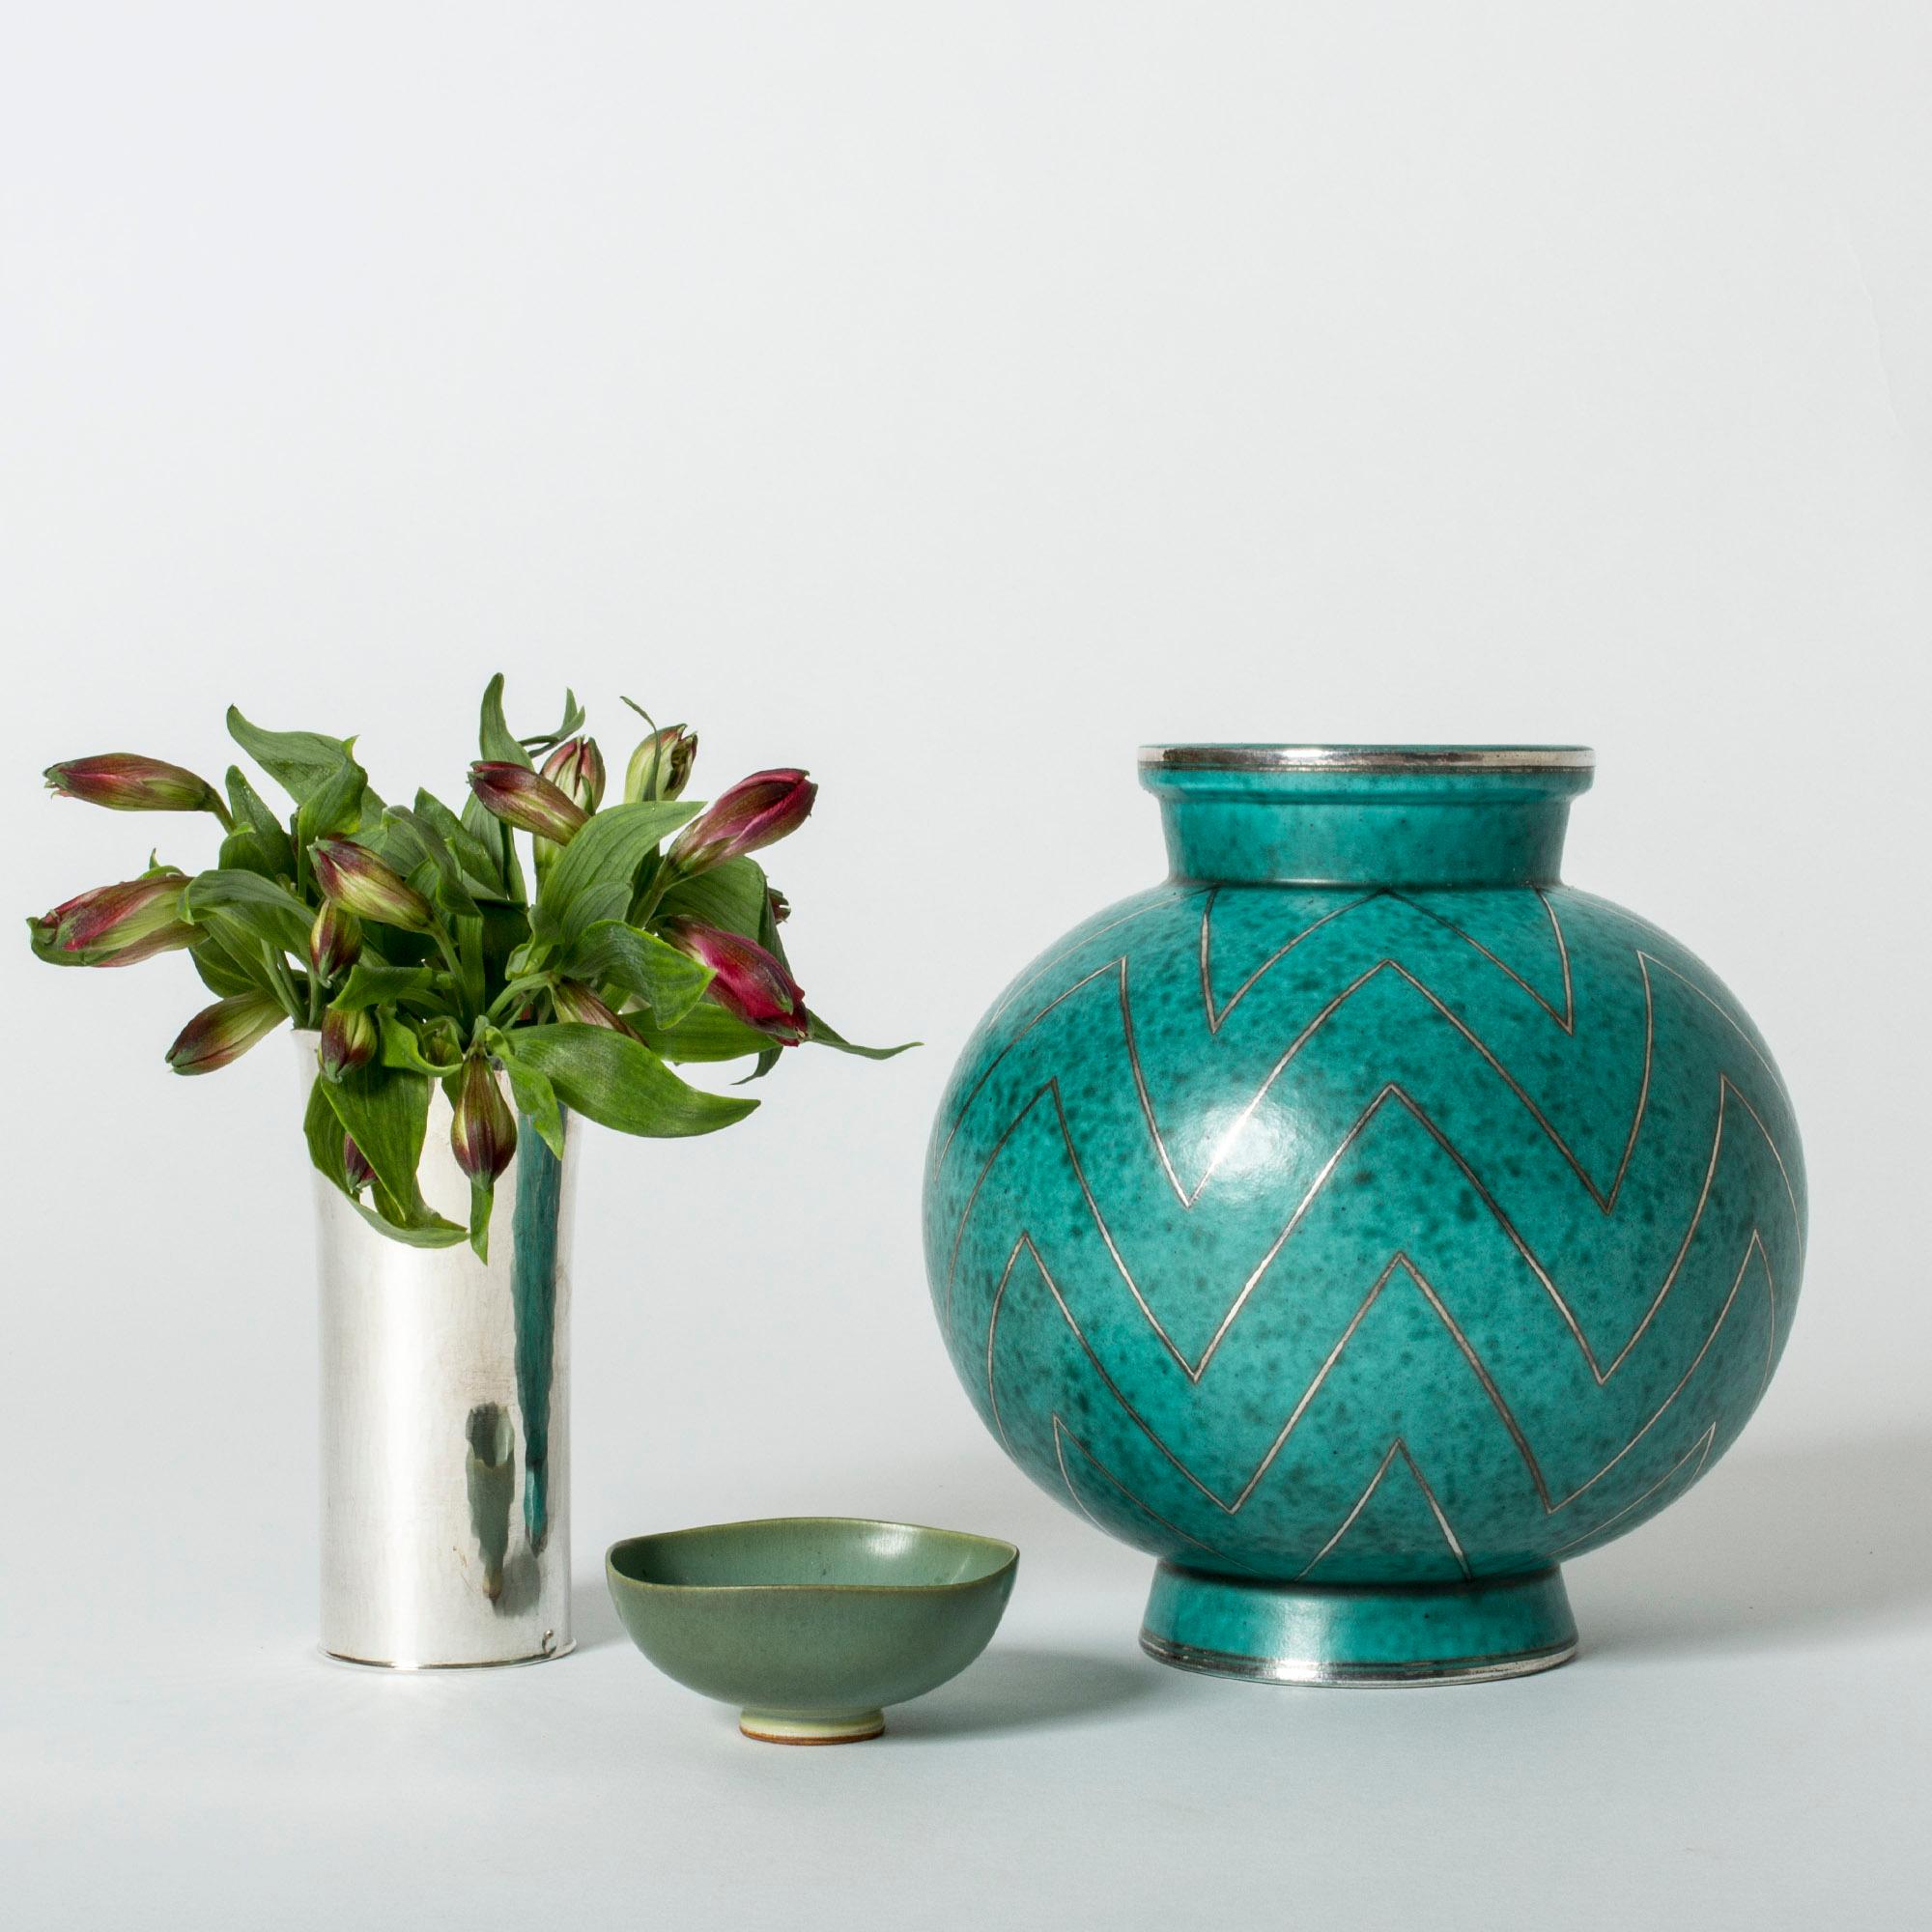 Stoneware “Argenta” Vase by Wilhelm Kåge 1